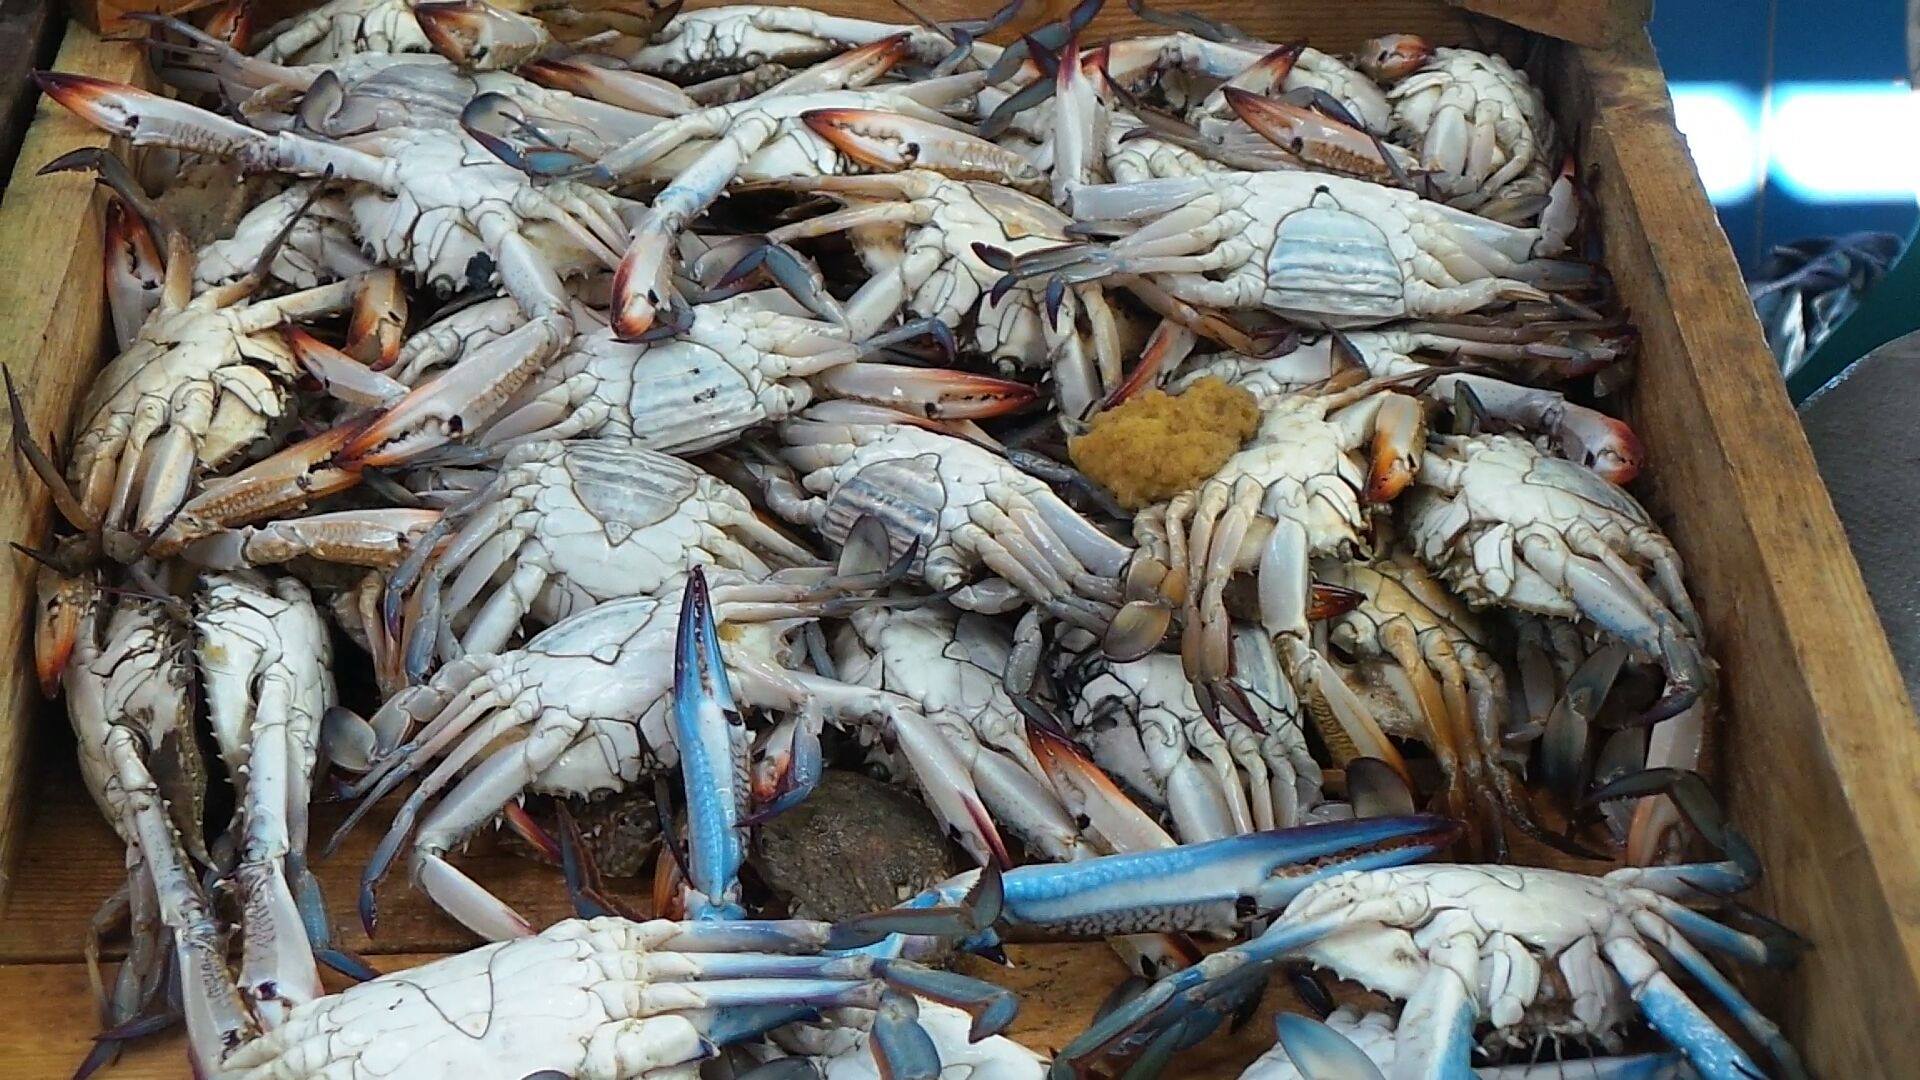   الصحة: إعدام ٧٨٠ كيلو إستاكوزا وأسماك منتهية الصلاحية بشرم الشيخ